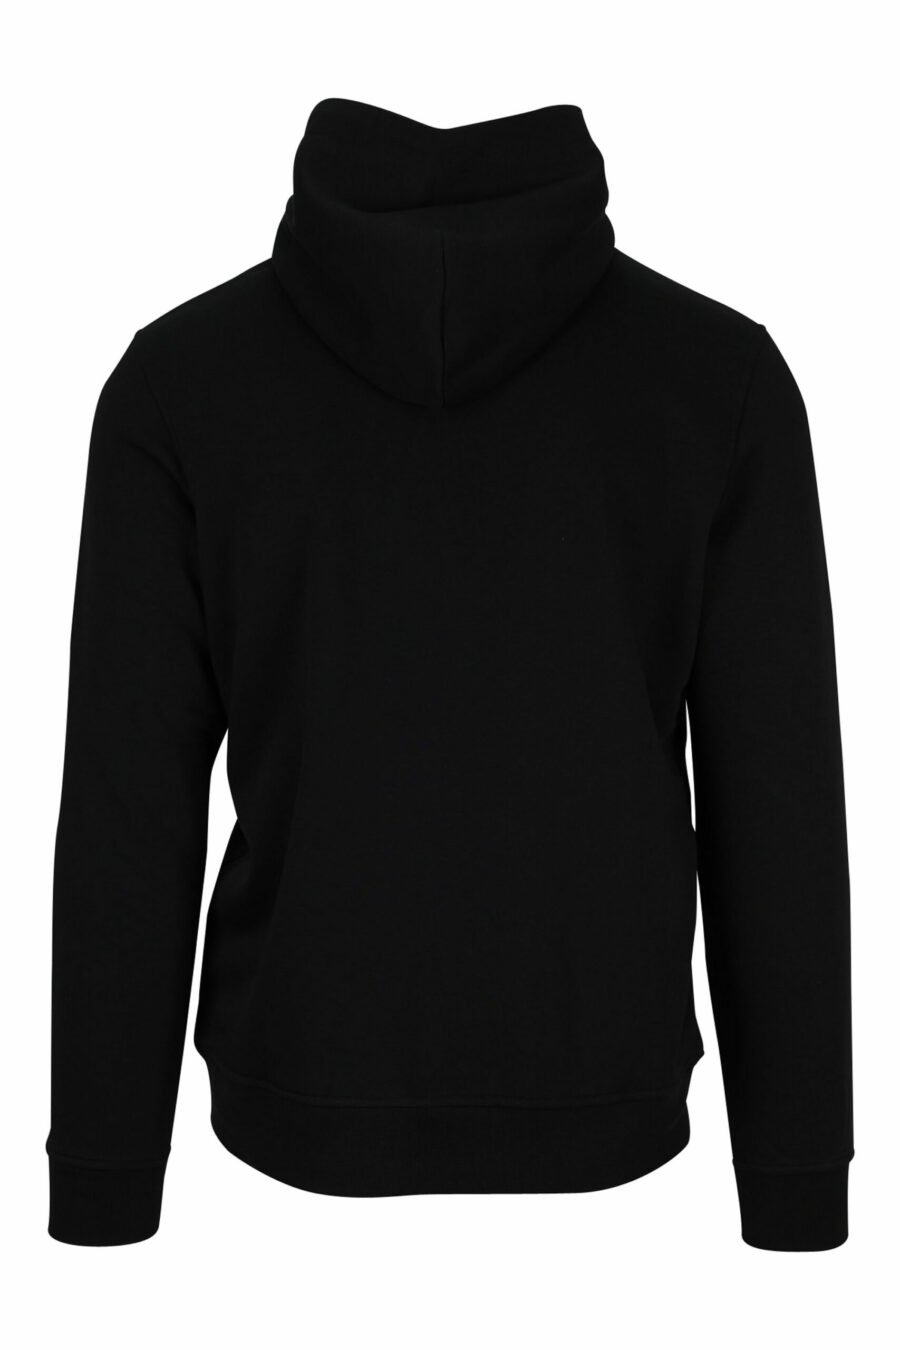 Schwarzes Sweatshirt mit Kapuze und Nylontasche - 4062226389976 2 skaliert